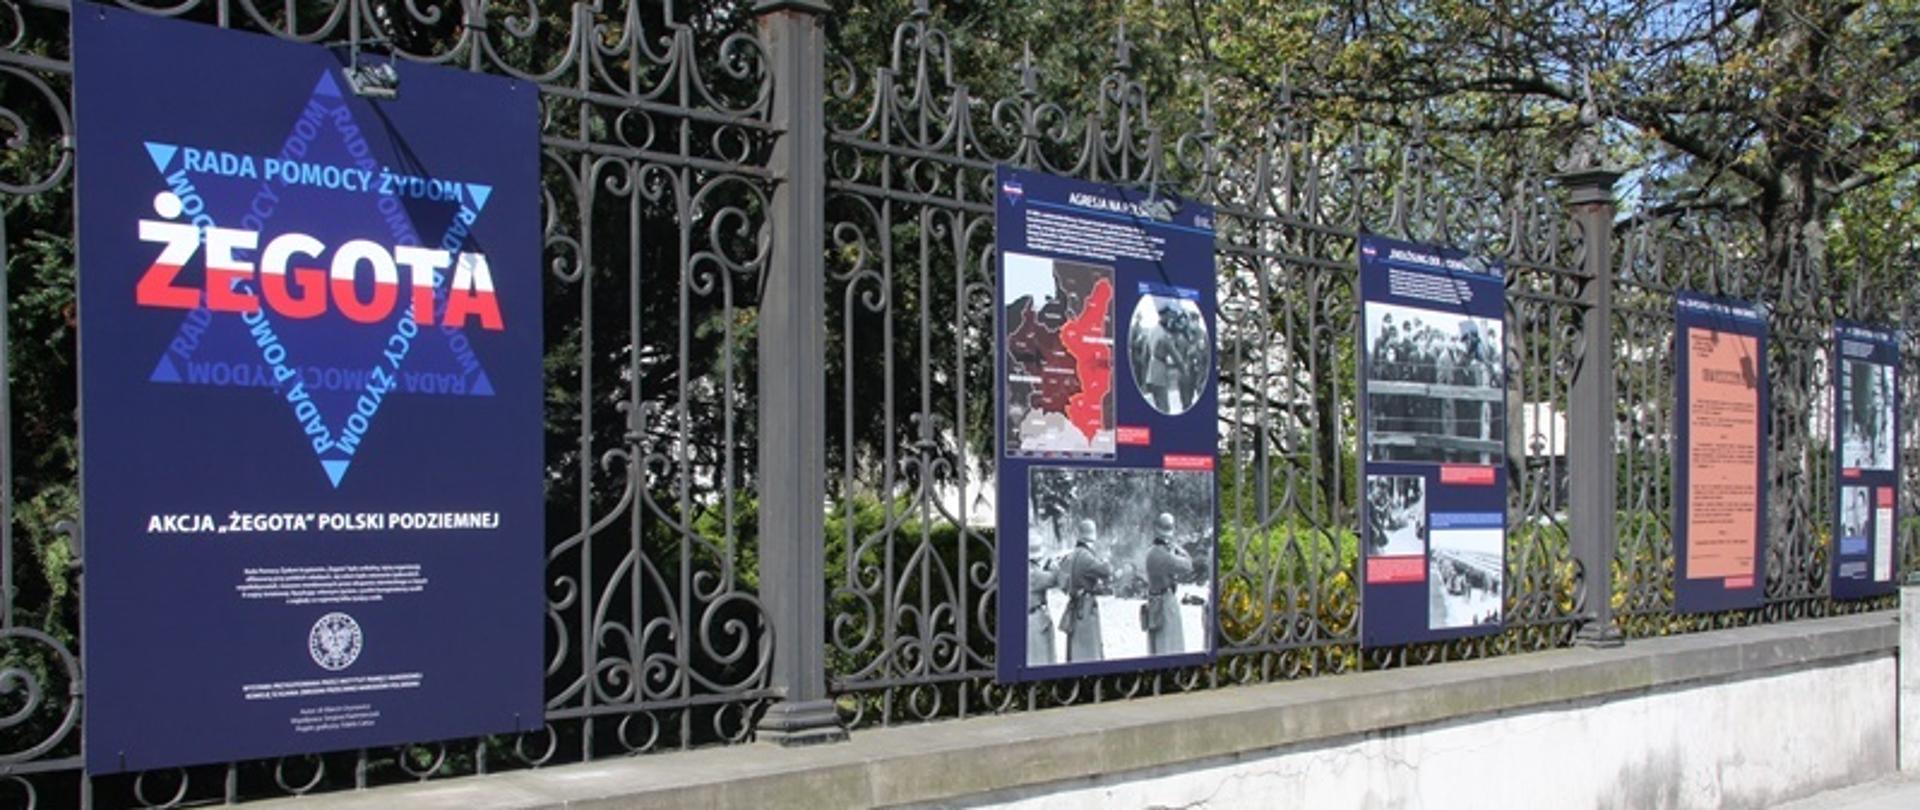 Na ogrodzeniu siedziby Ministerstwa Sprawiedliwości została zaprezentowana plenerowa wystawa ukazująca działalność „Żegoty” – tajnej organizacji Polskiego Państwa Podziemnego, która pod okupacją niemiecką ratowała Żydów przed zagładą.